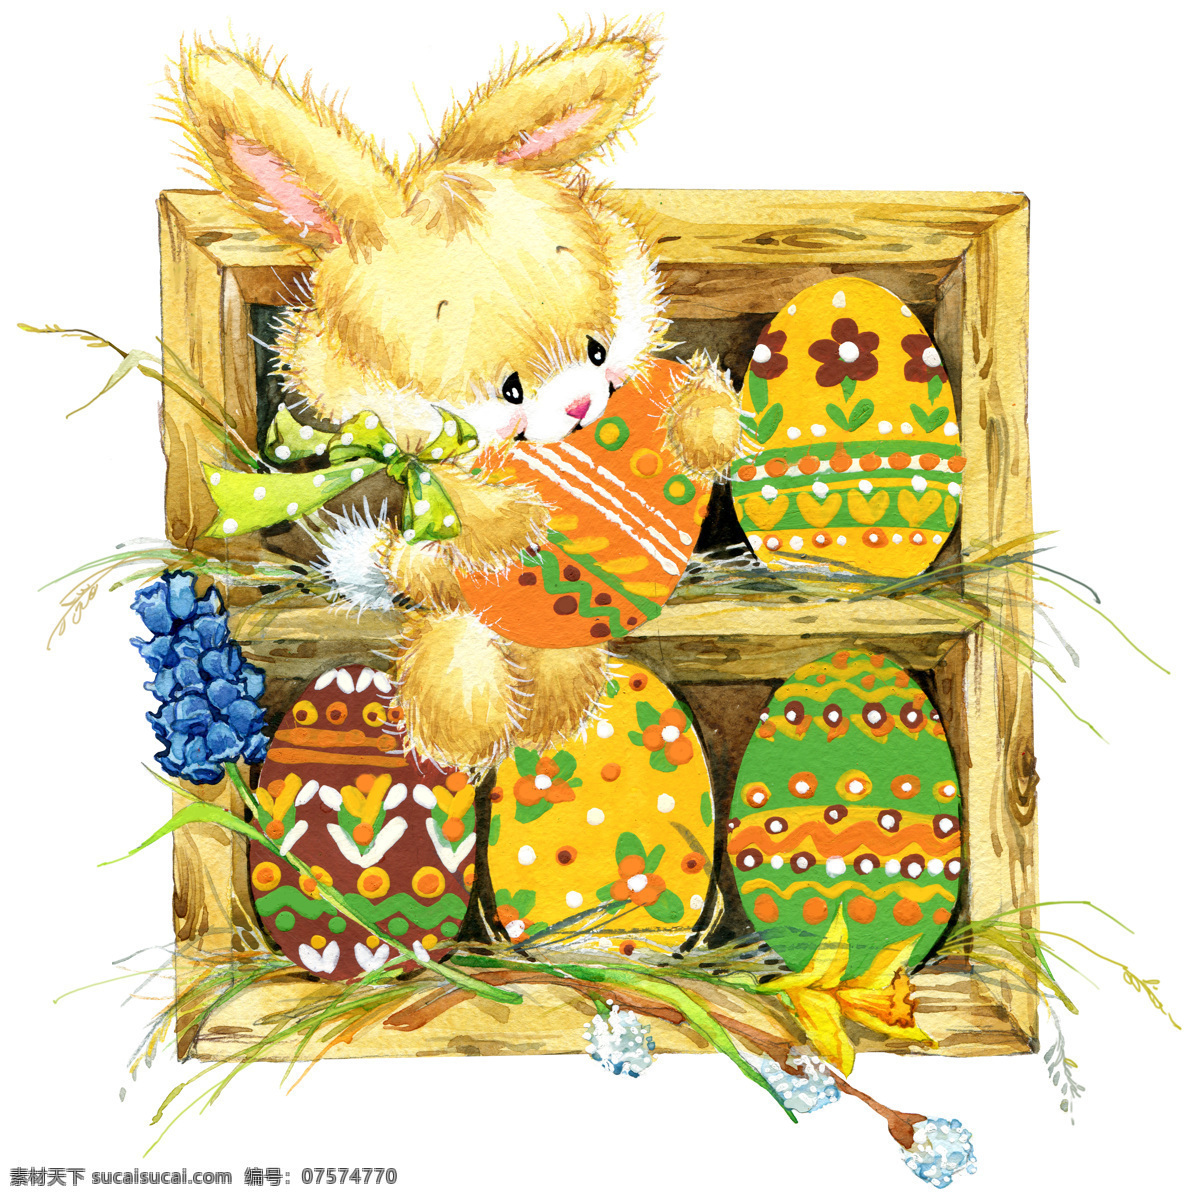 卡通 复活节 彩蛋 兔子 复活节彩蛋 卡通兔子 水彩画 复活节快乐 复活节素材 节日庆典 生活百科